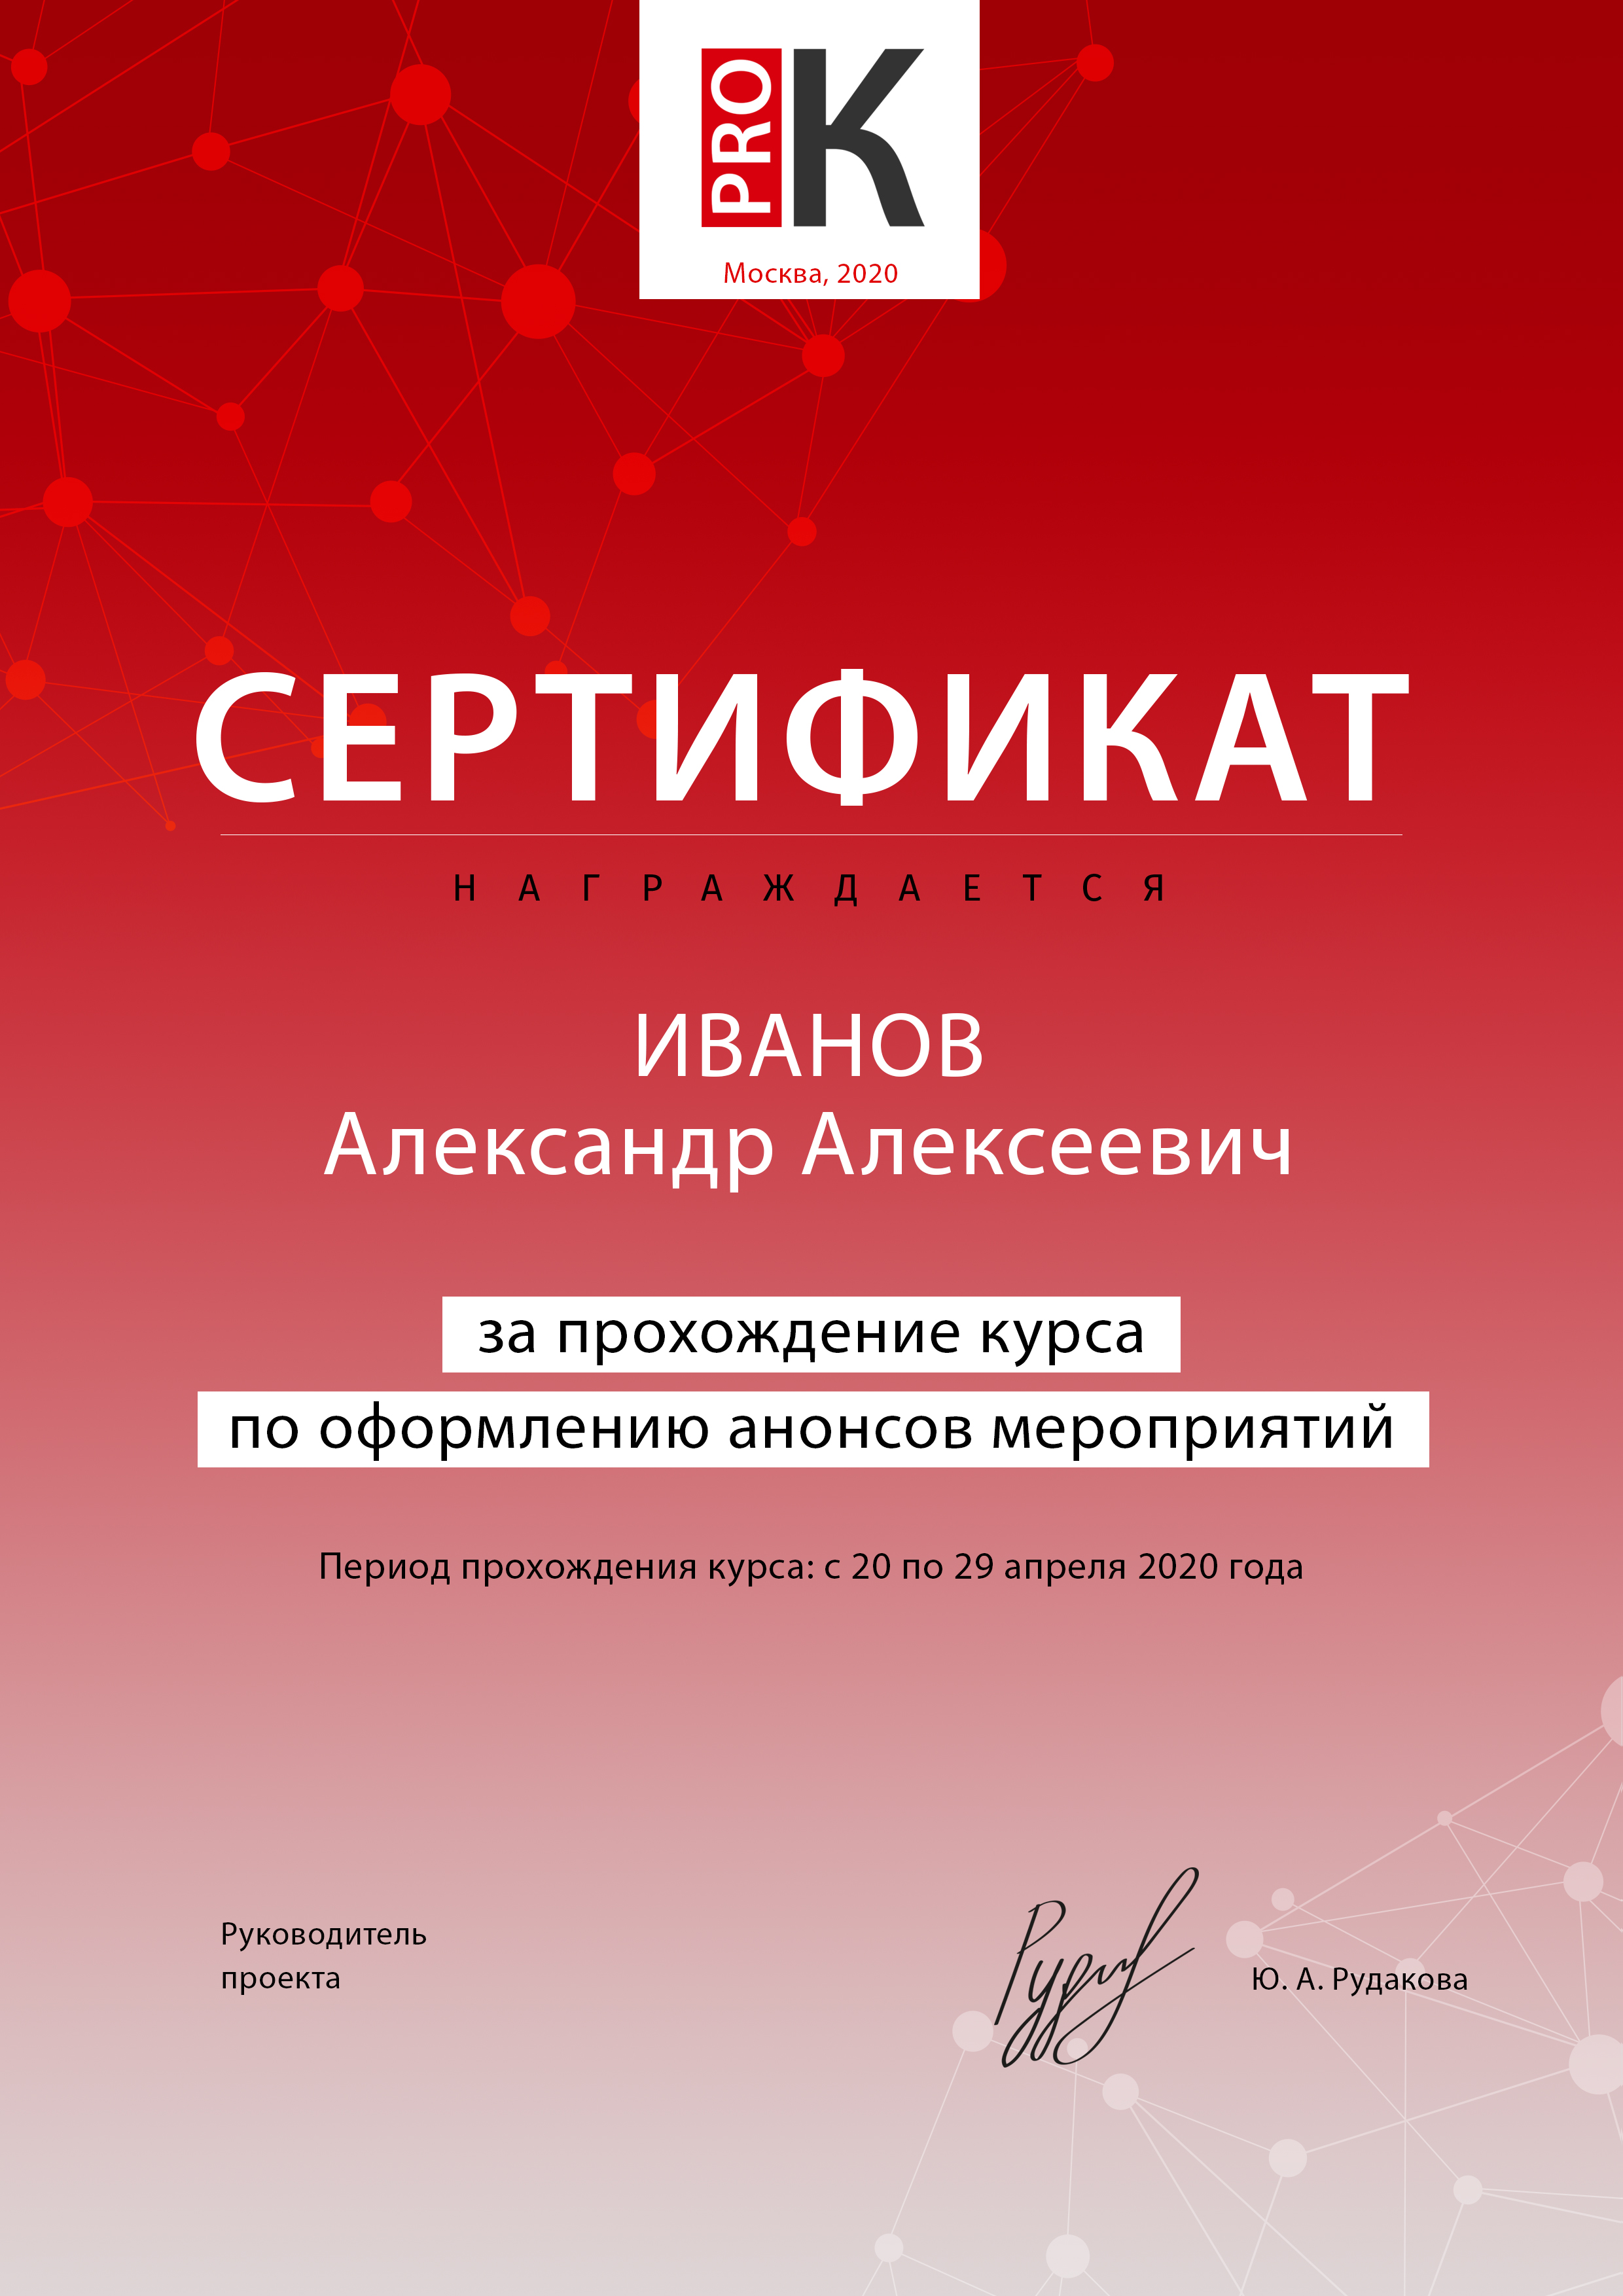 Список участников курса автомодерации «PRO.Культура.РФ», получивших сертификаты